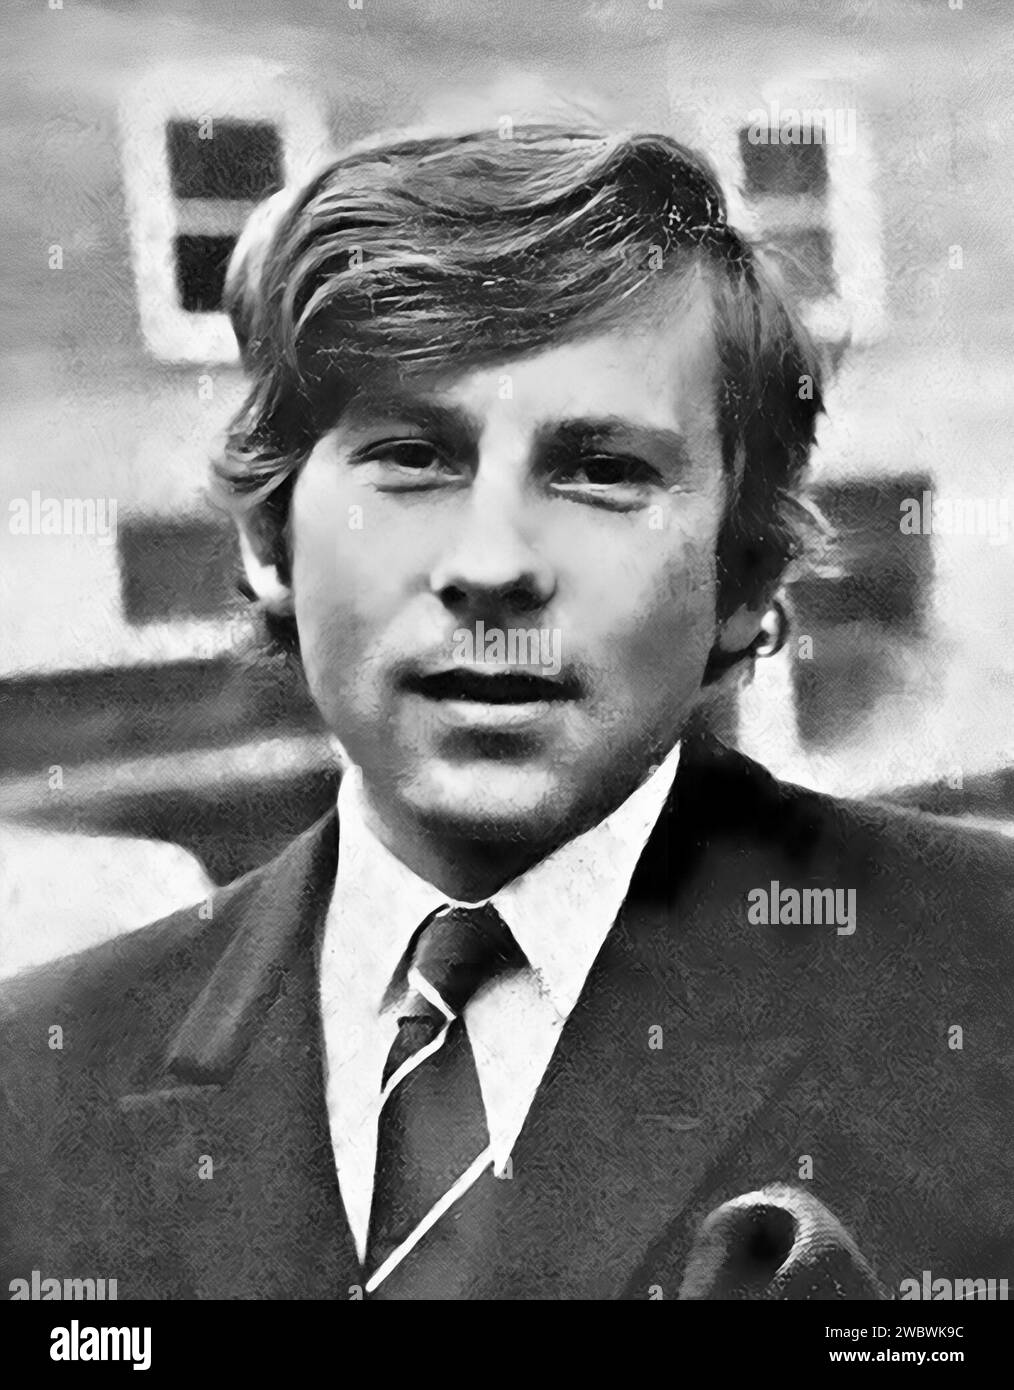 Roman Polanski. Porträt des französischen und polnischen Filmregisseurs Raymond Roman Thierry Polański (né Liebling; 1933), um 1969 Stockfoto